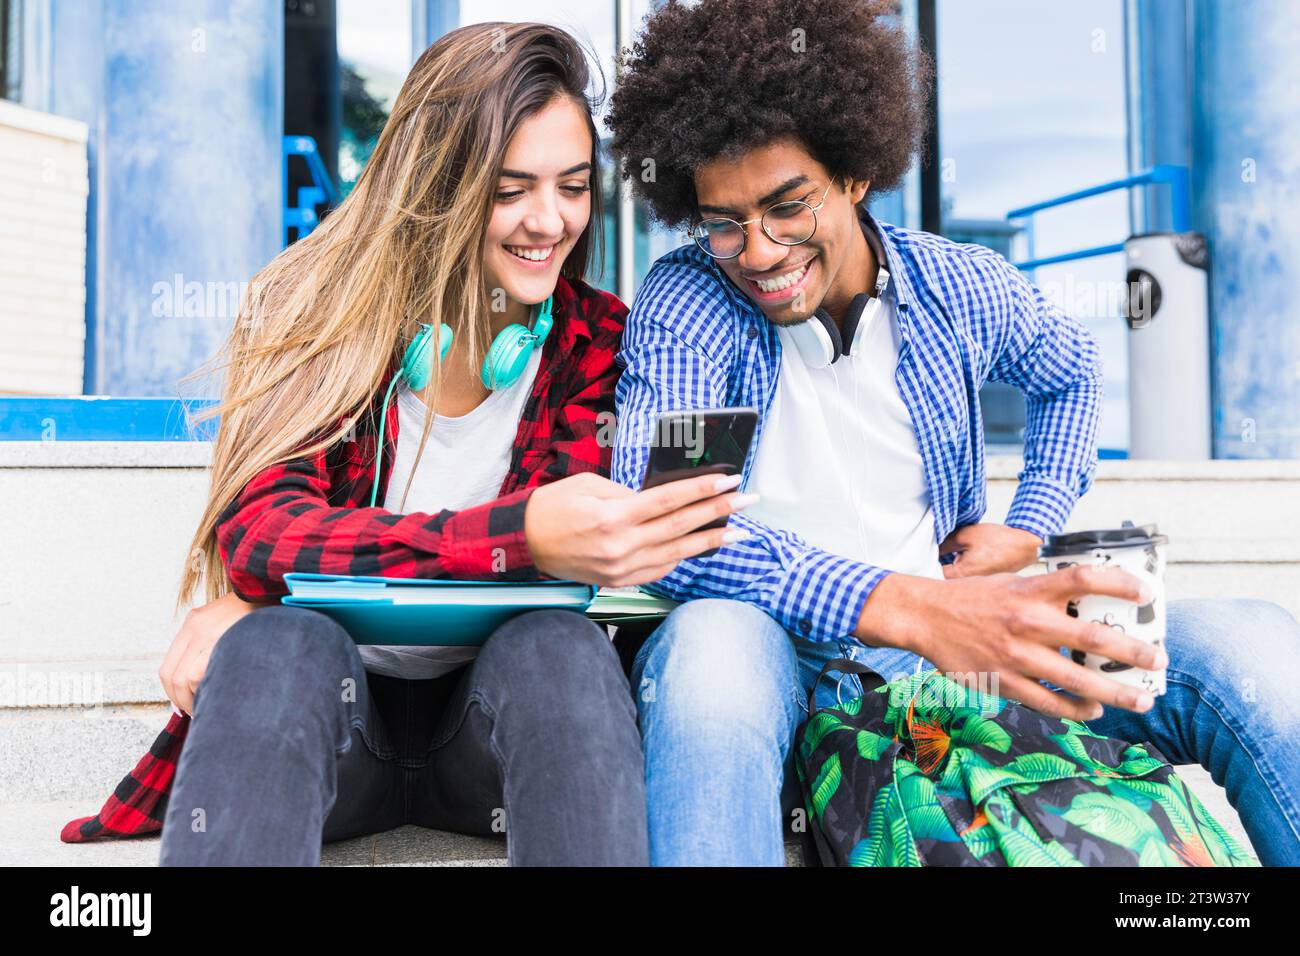 Portrait lächelnde junge Studenten, die ein Mobiltelefon suchen Stockfoto